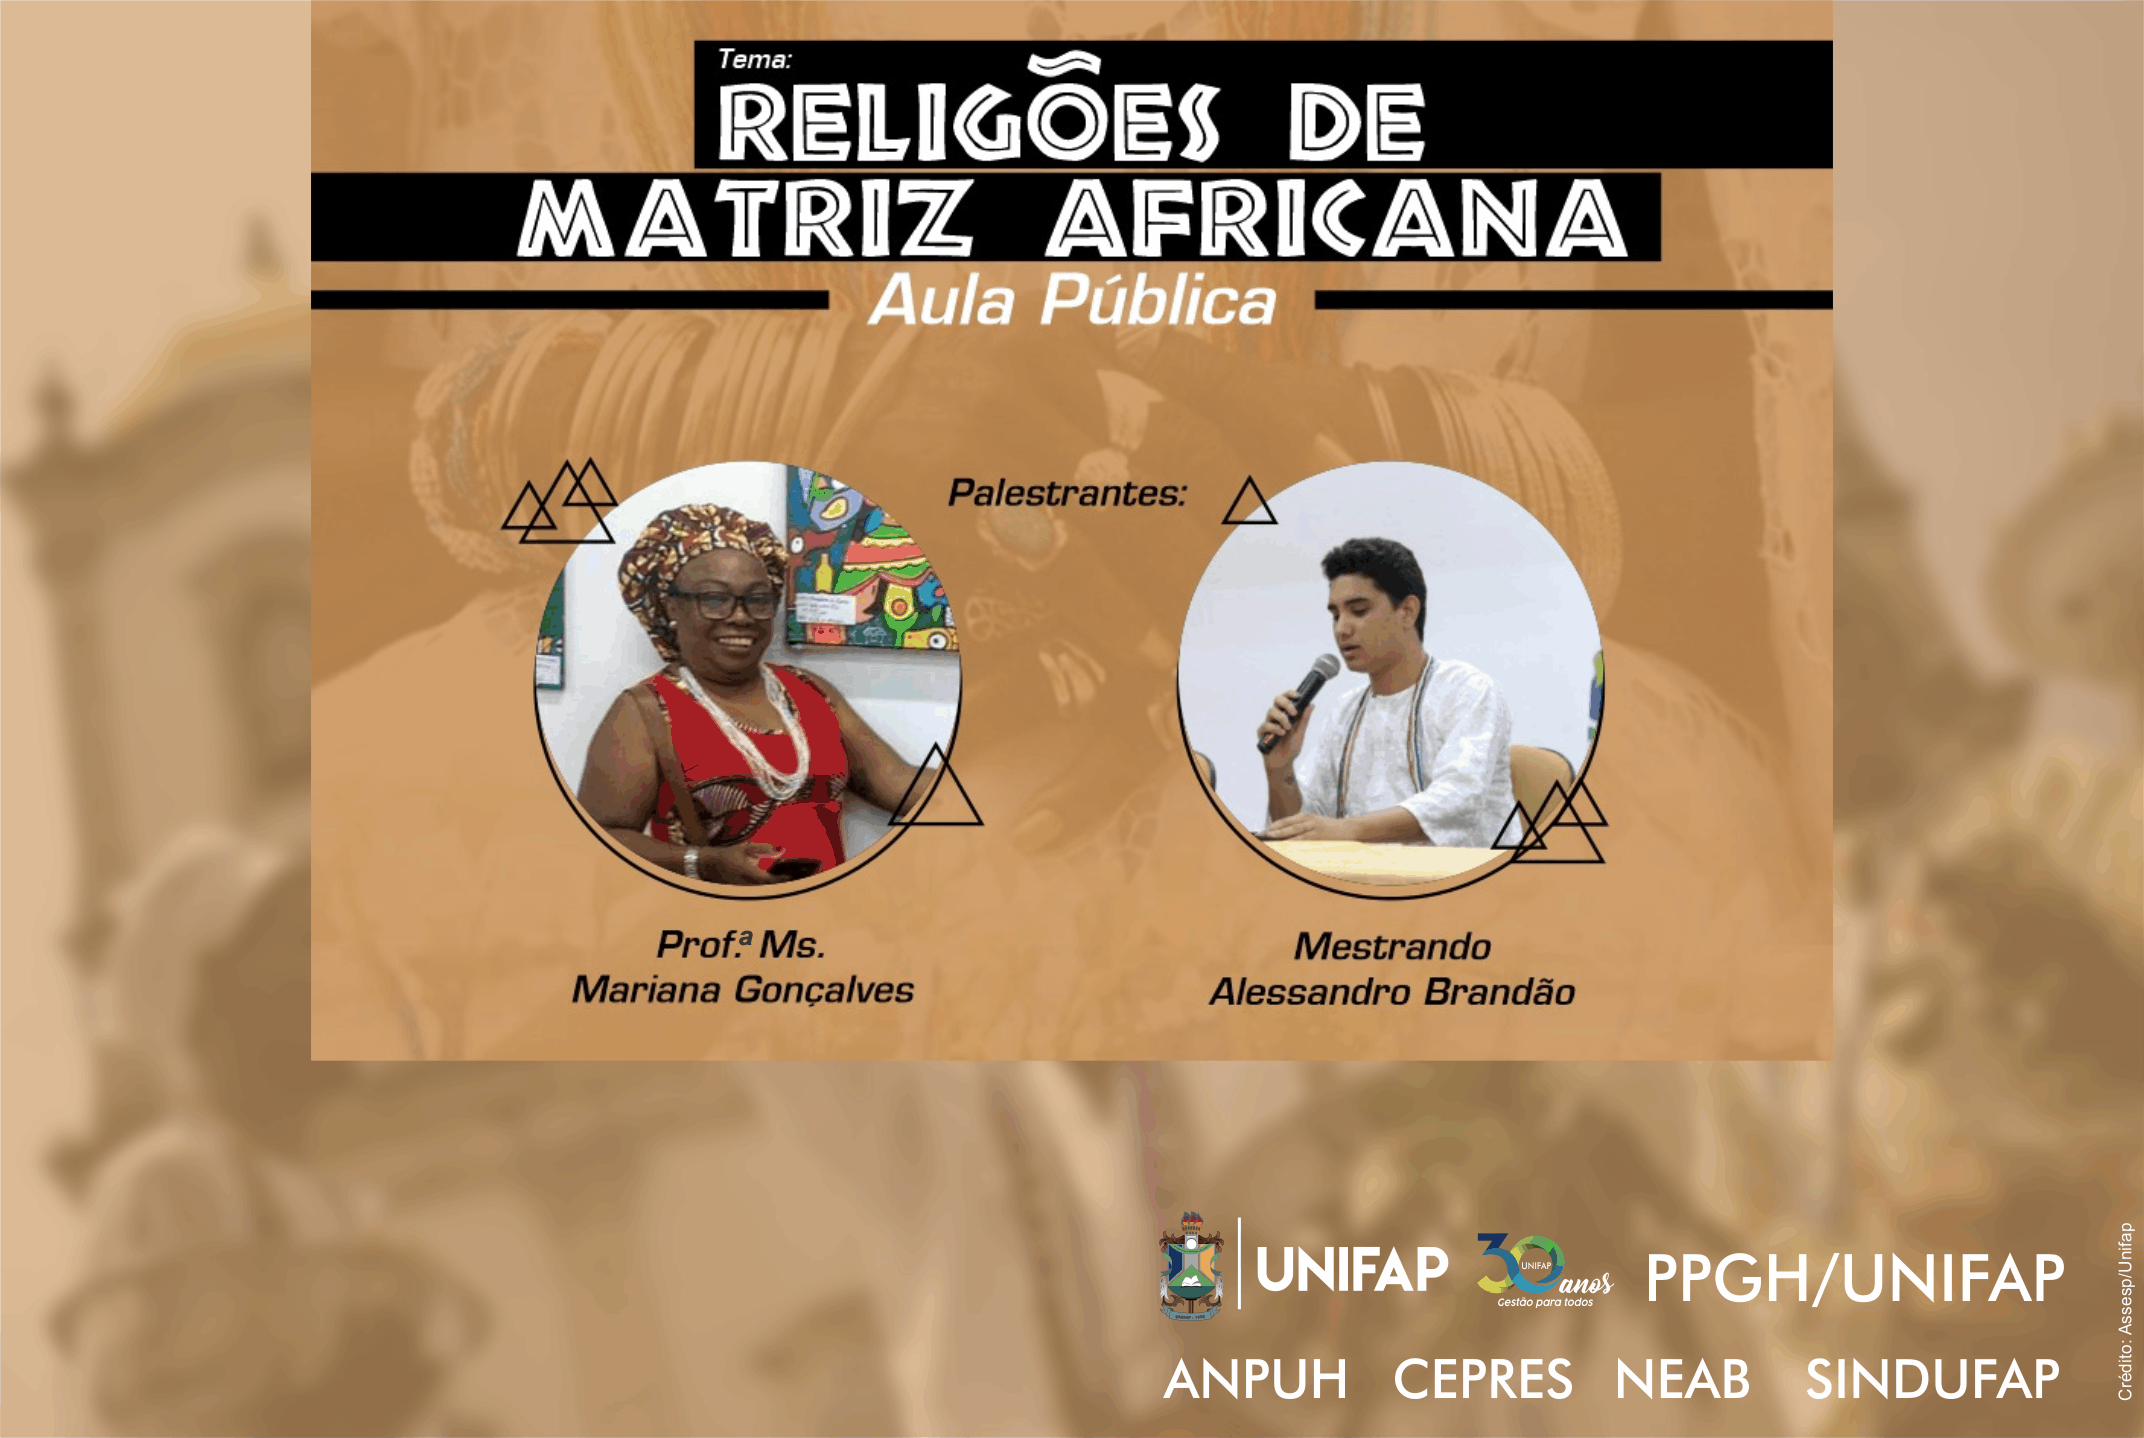 Aula pública abordará história das religiões de matriz Africana no Amapá